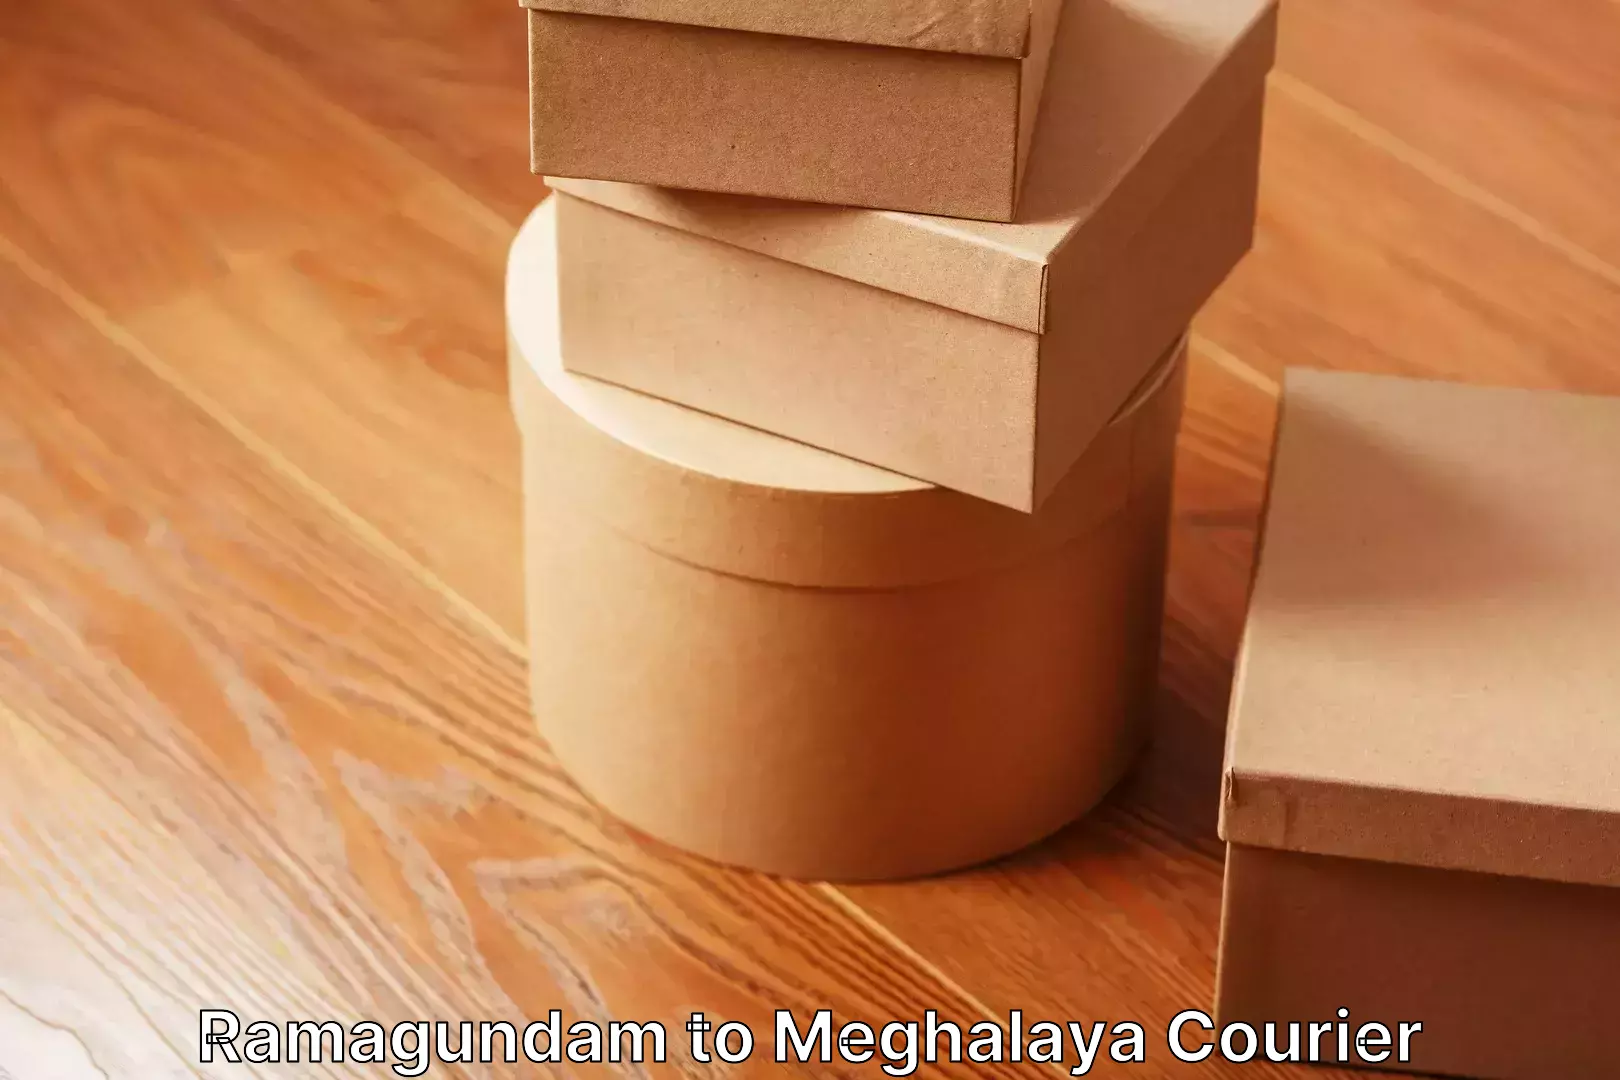 Household moving experts Ramagundam to Meghalaya